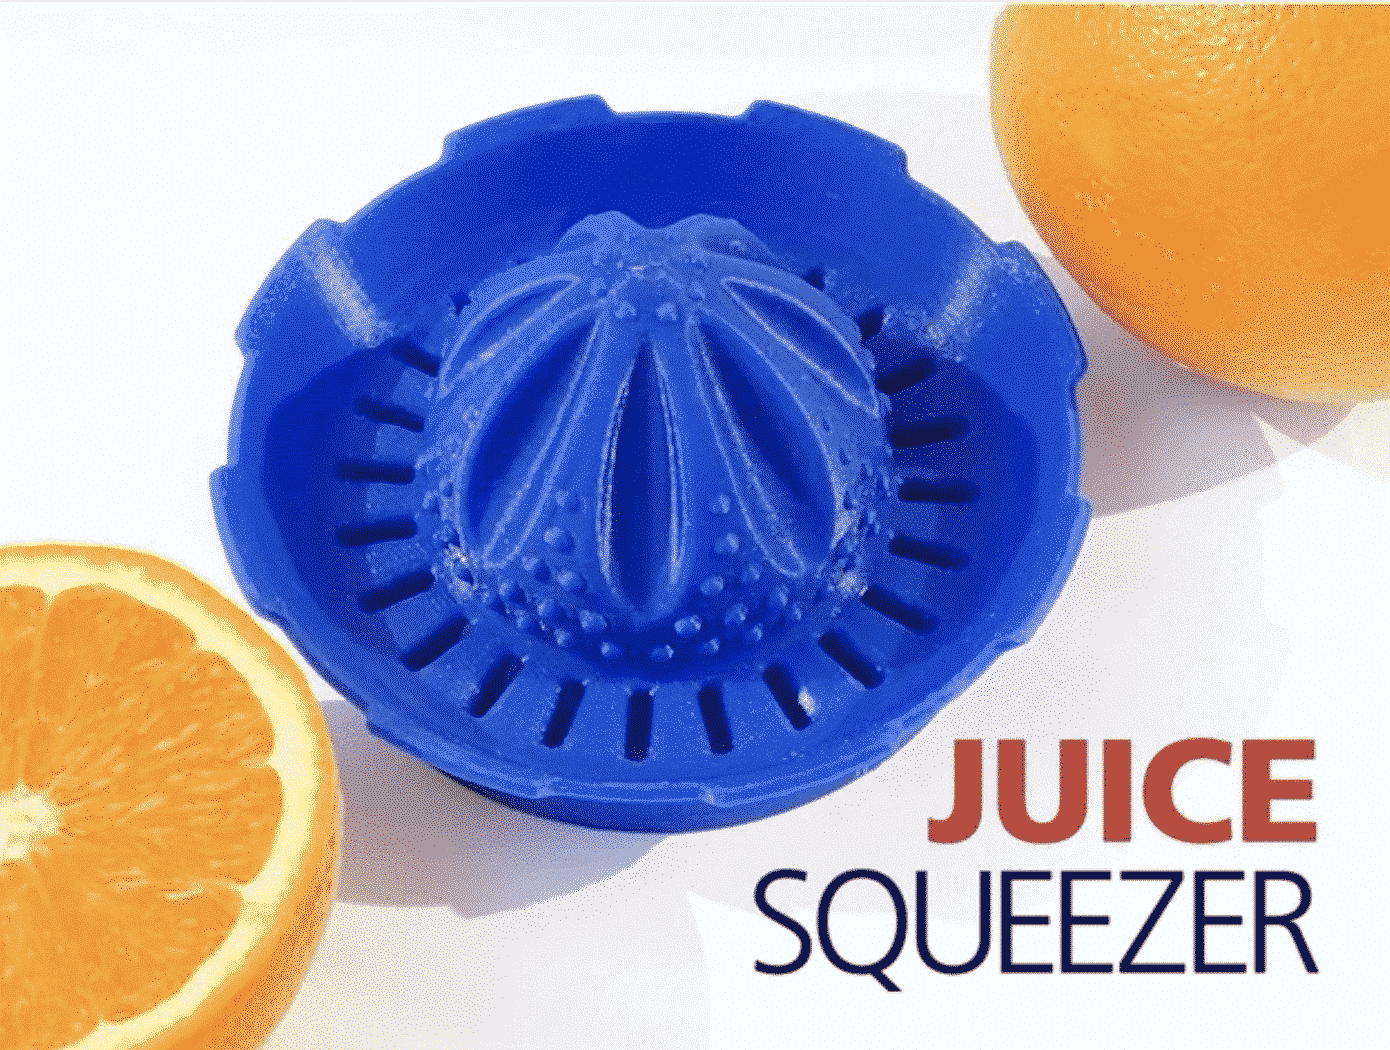 3D Printed Juicer Squeezer